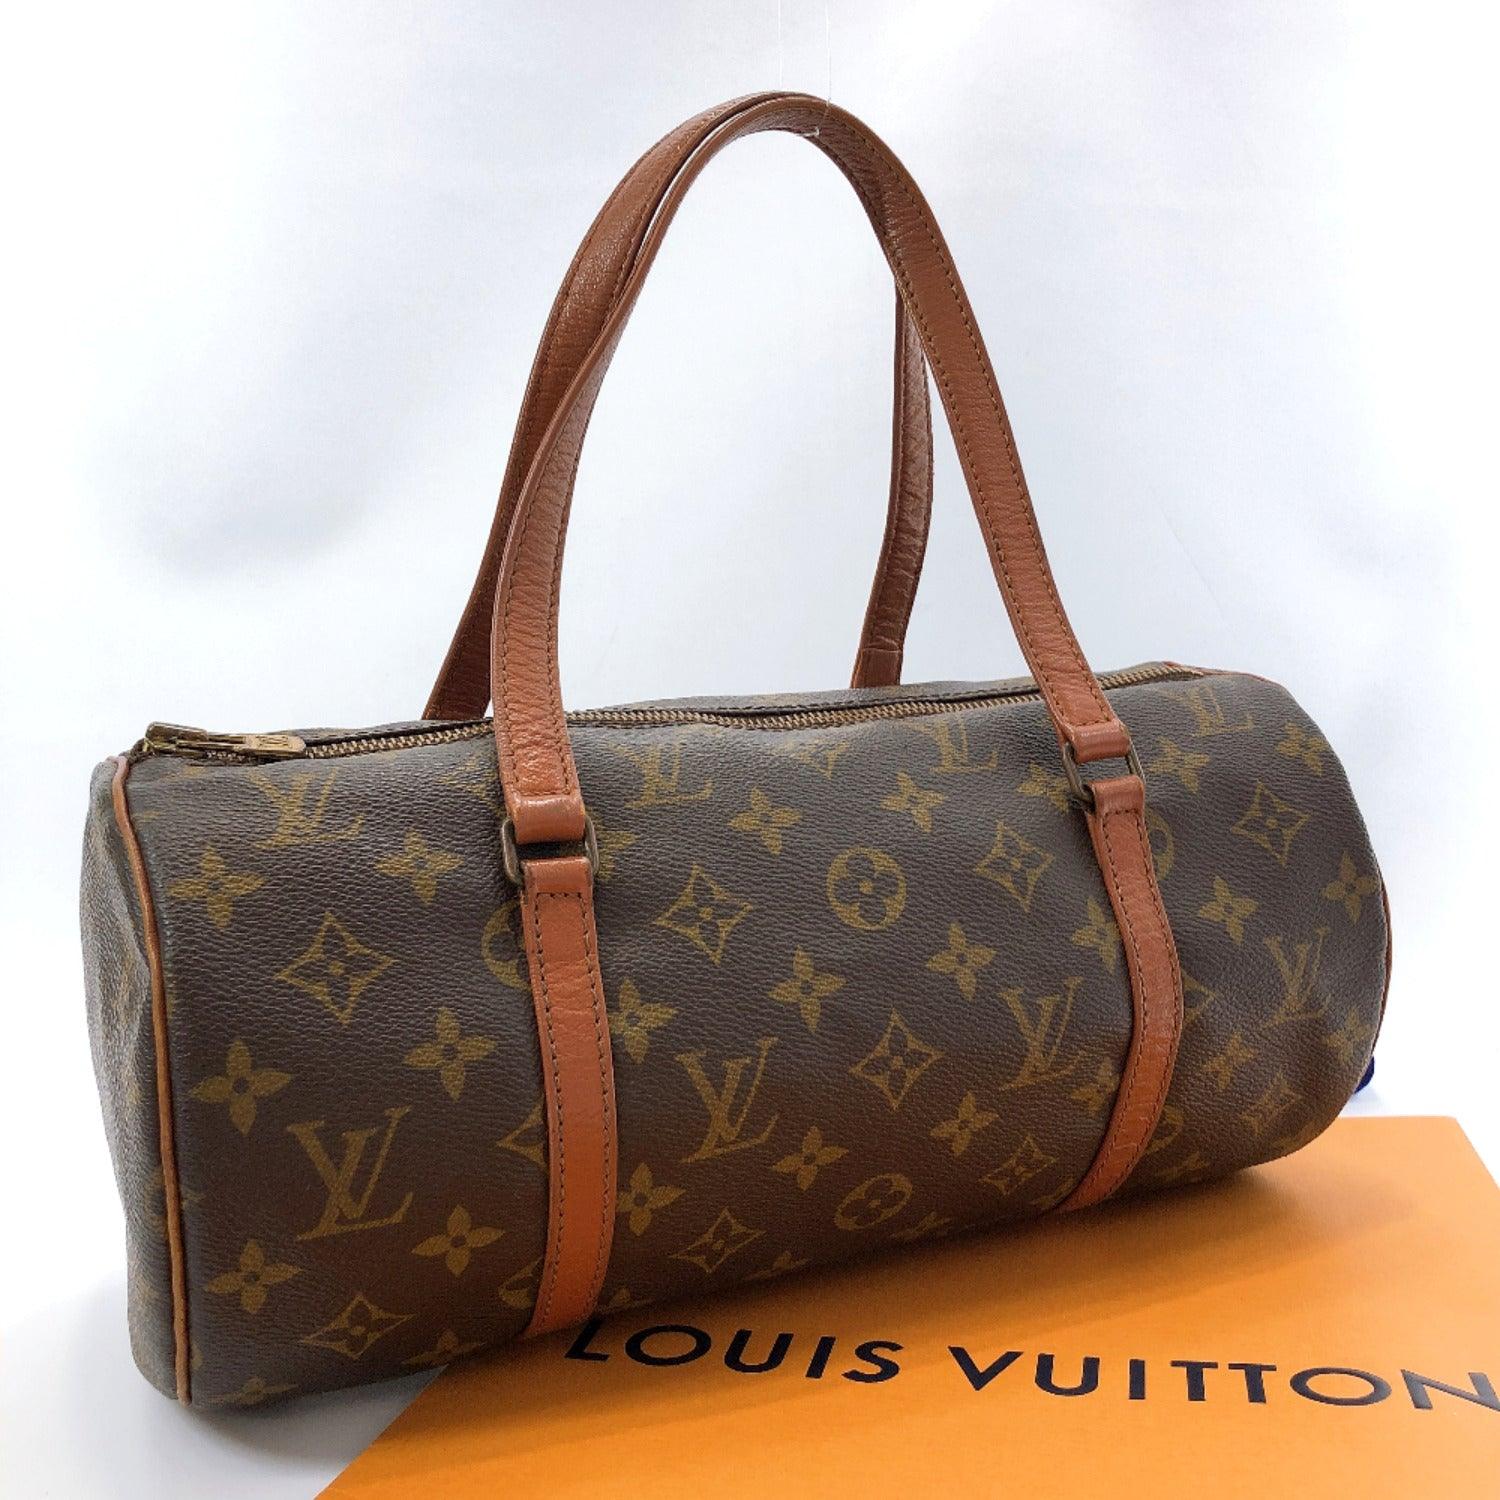 Buy Louis Vuitton Handbag Papillon 30 Red Vernis Leather Vintage